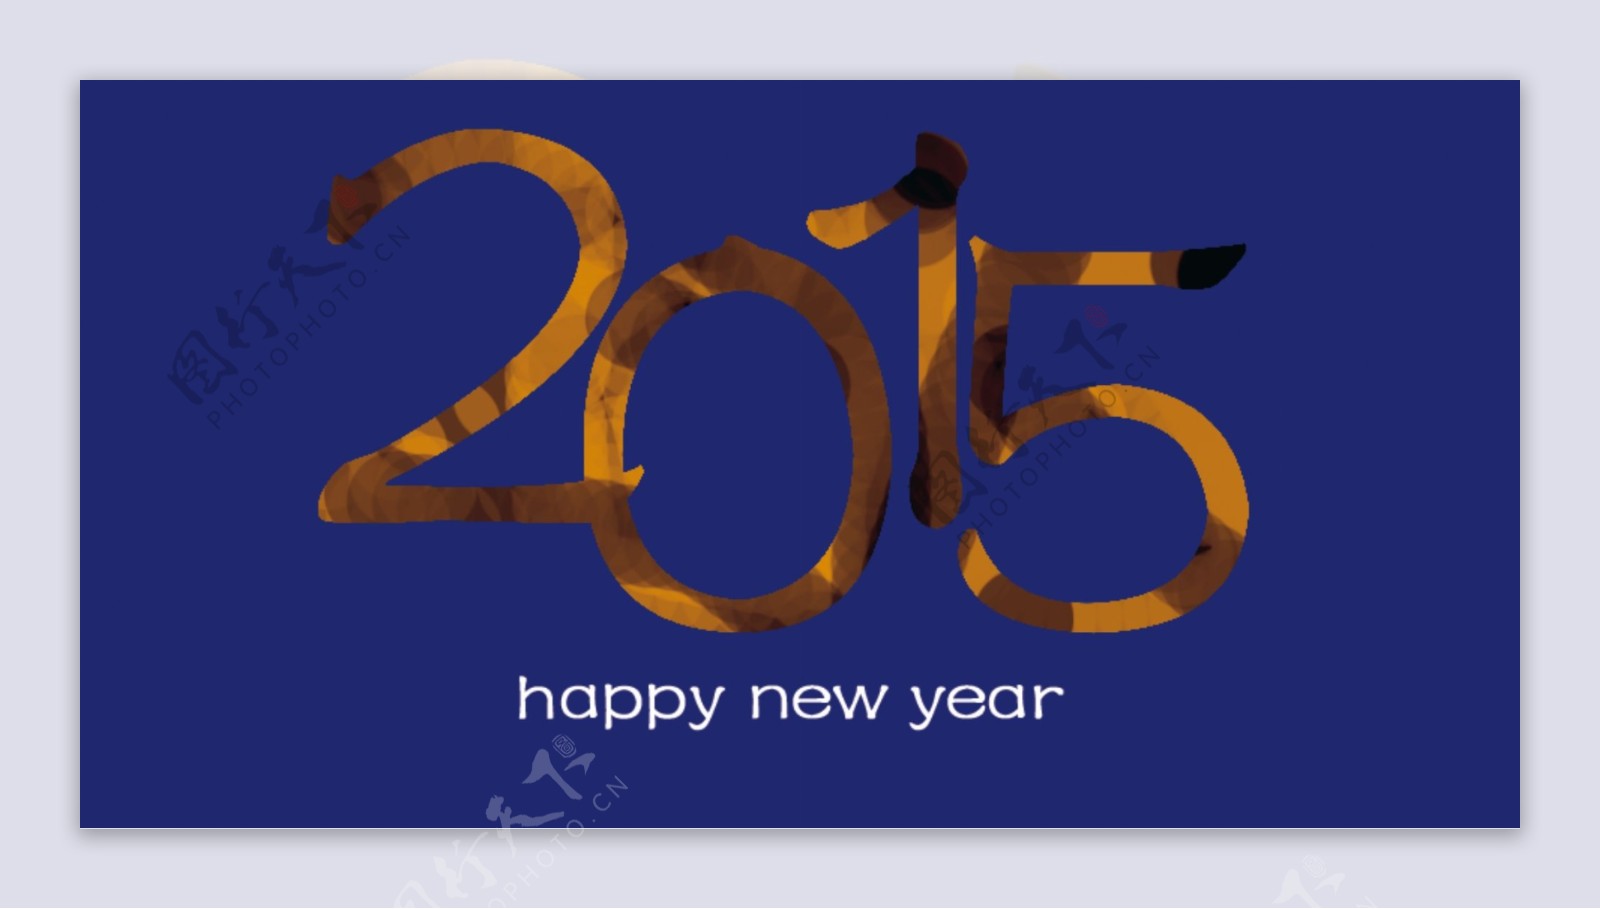 2015年新年快乐